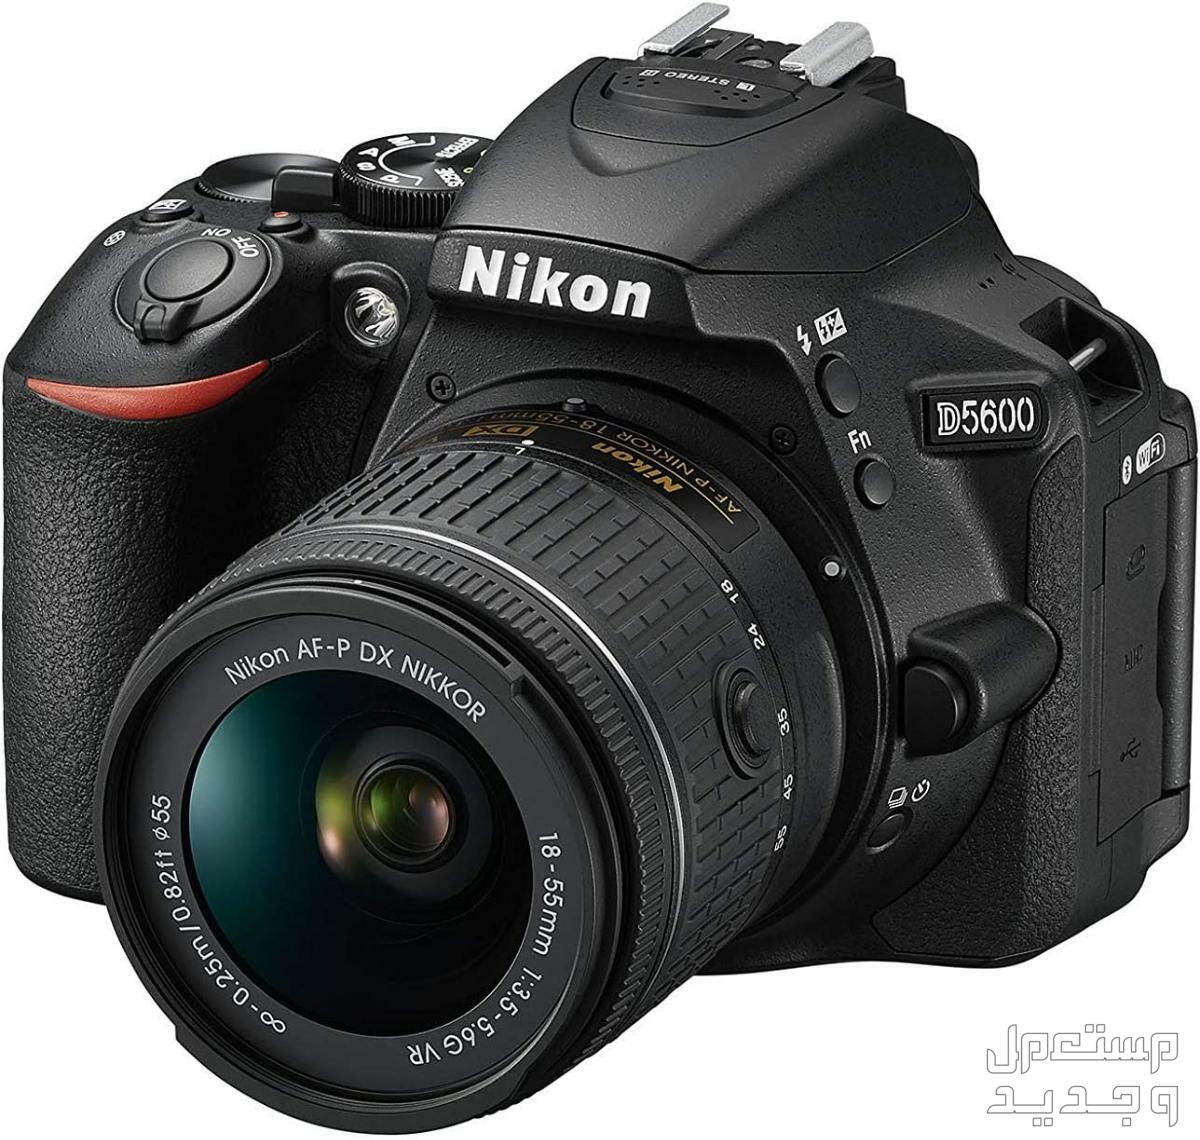 10 كاميرات تصوير ماركات عالمية بأسعار رخيصة في الكويت كاميرا Nikon D5600